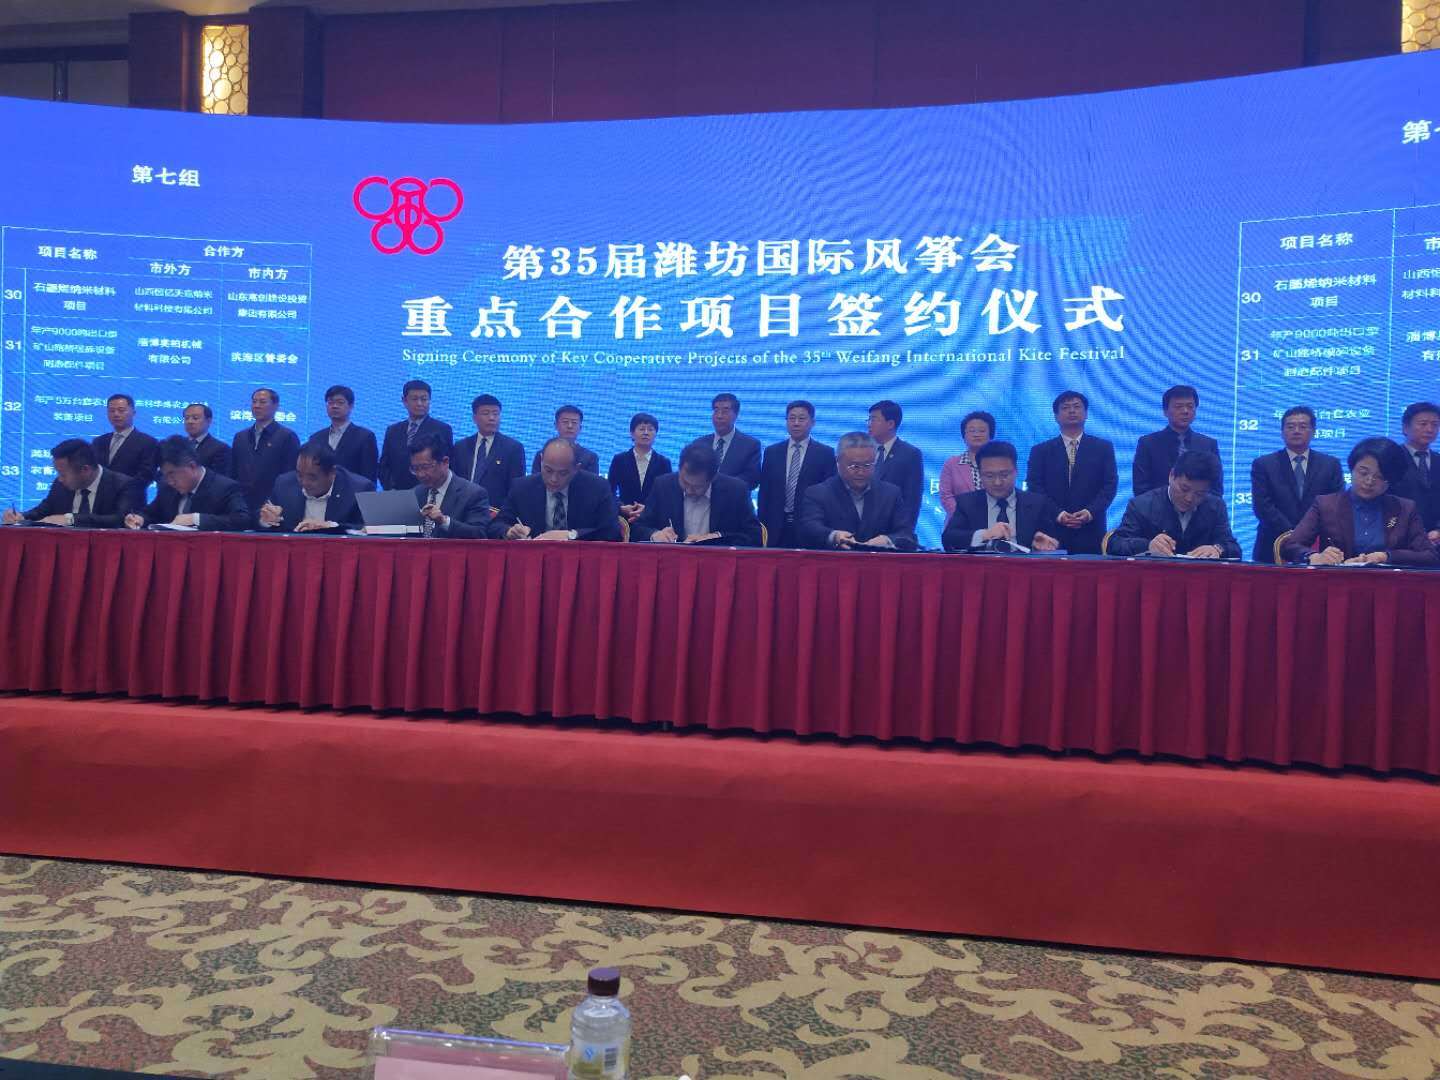 Компания Shenghe Heavy Industry приняла участие в церемонии подписания ключевых проектов сотрудничества 35 - го международного фестиваля воздушных змеев Weifang International Kite Festival